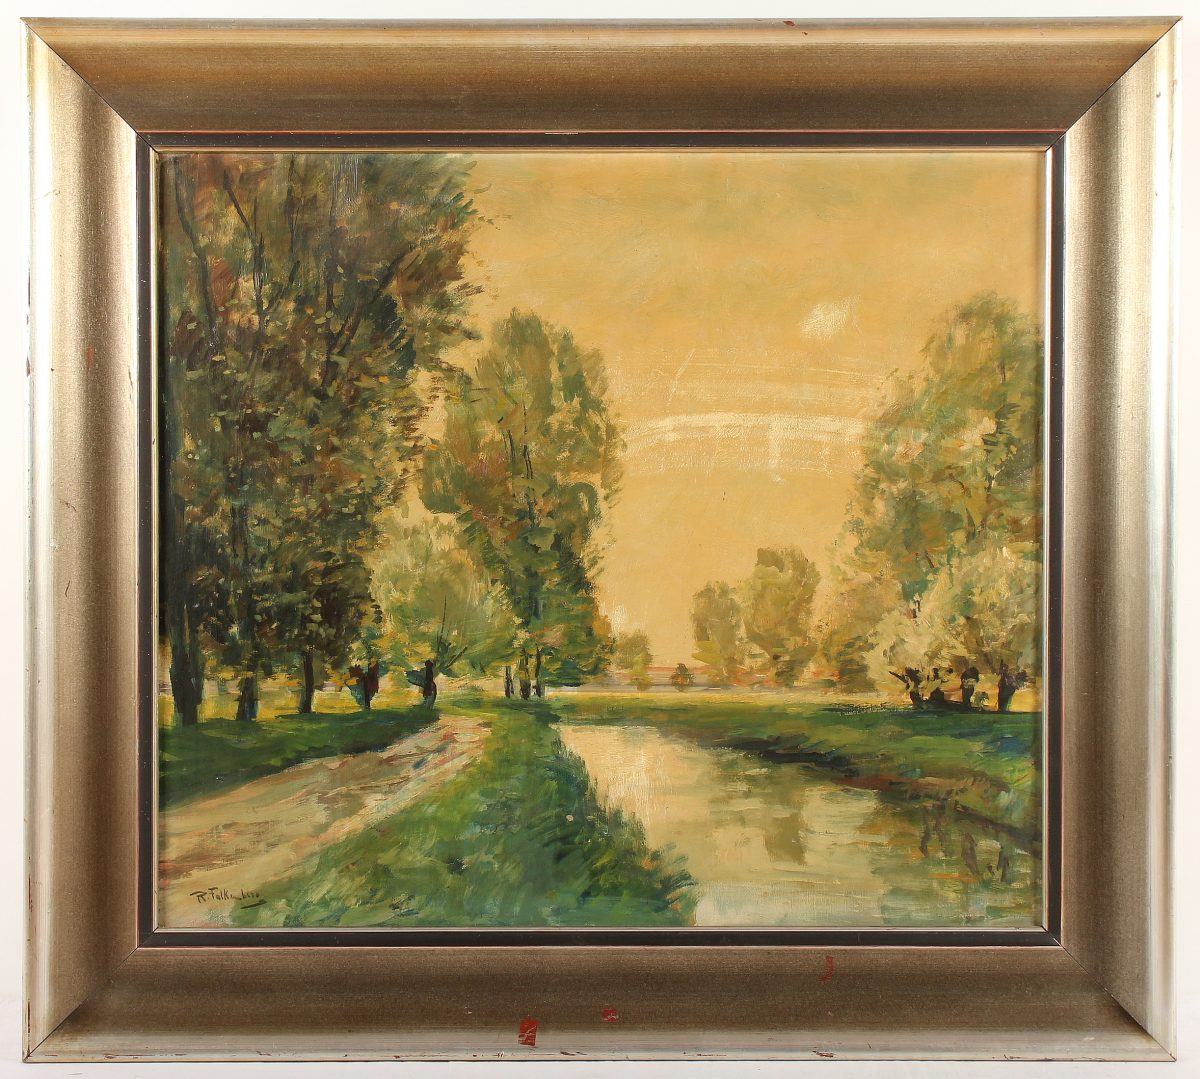 FALKENBERG, Richard (1875-1948), "Landschaft", Öl/Lwd., 70 x 80, unten links signiert, R.